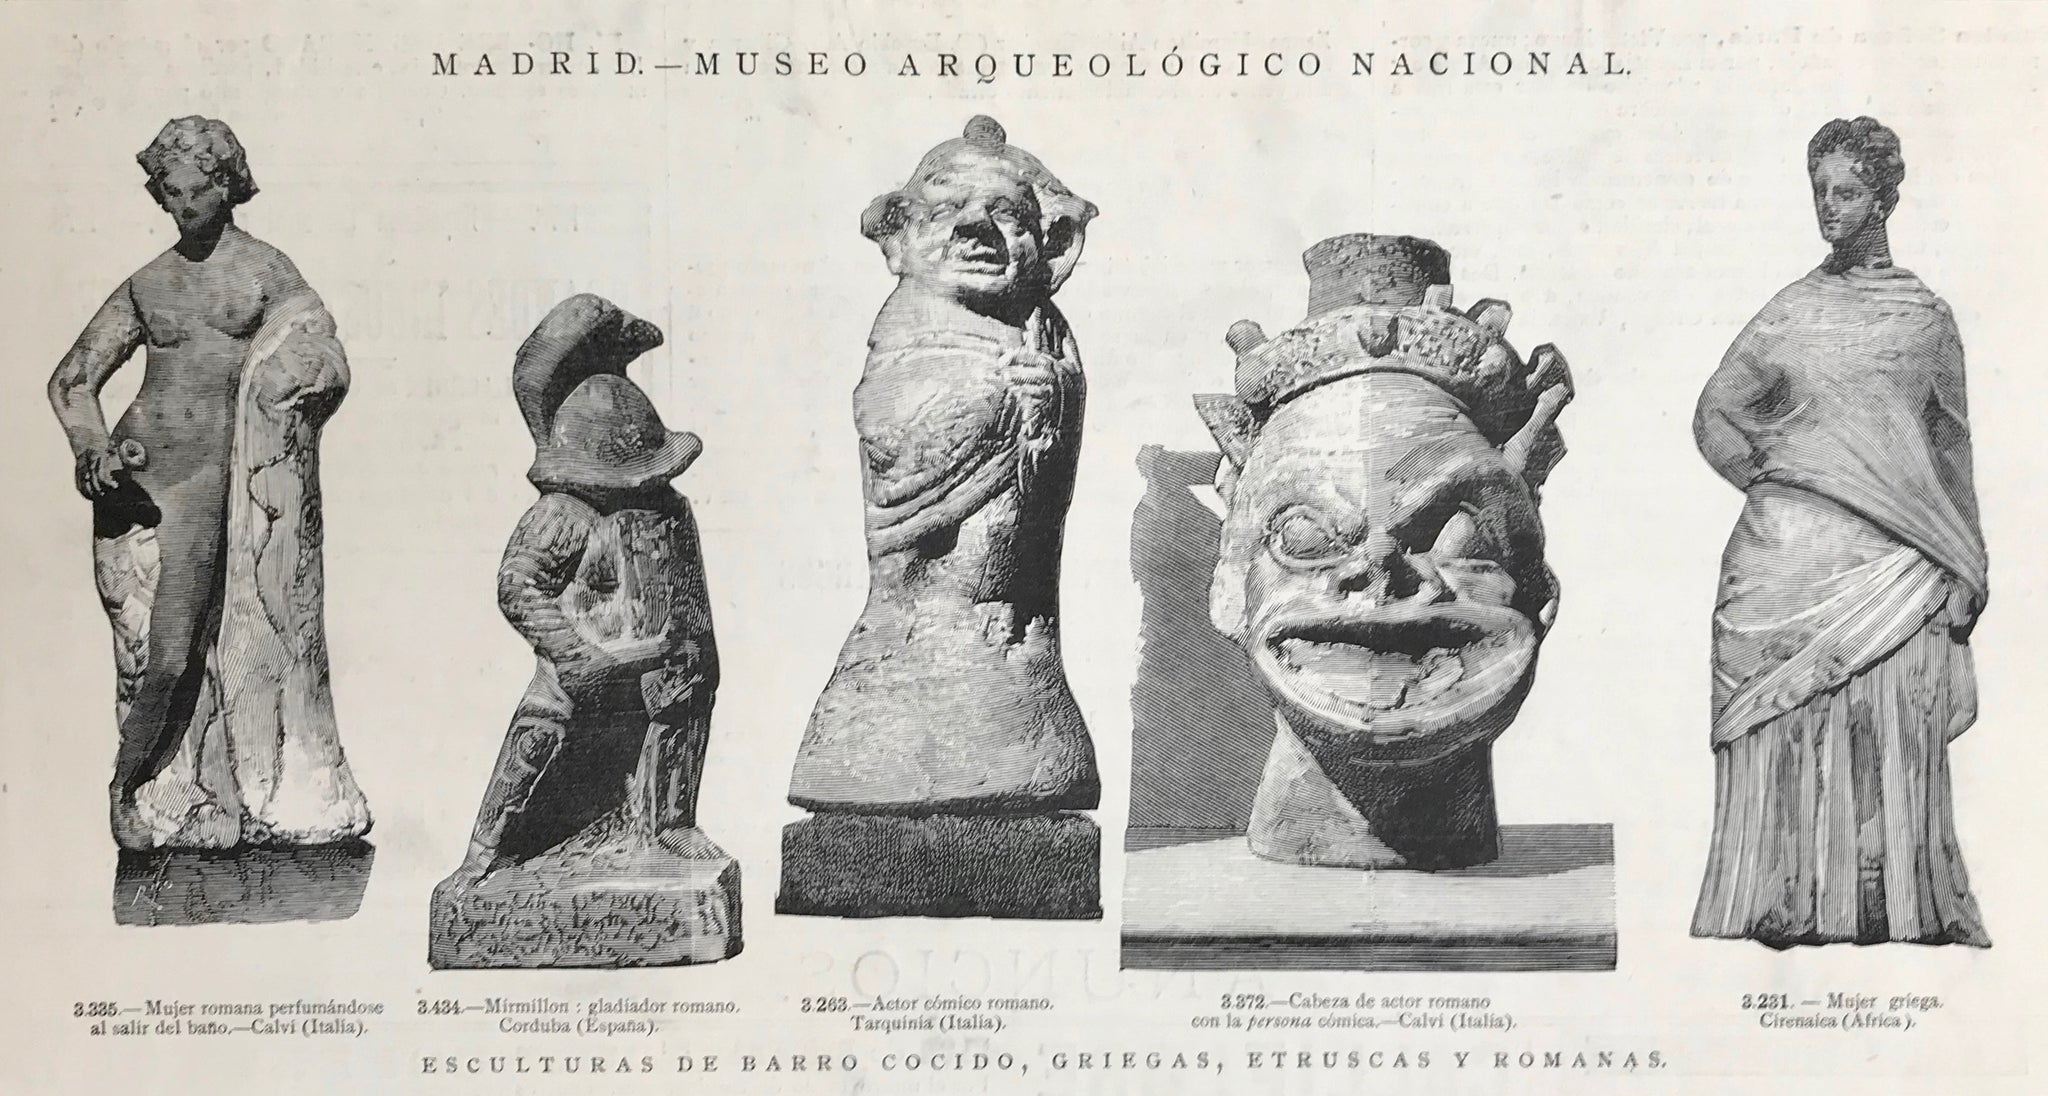 Archeology, "Madrid - Museo Archeologico Nacional" "Esculturas de Barro cocido, Griegas, Etruscas y Romanas"  Wood engraving 1884.